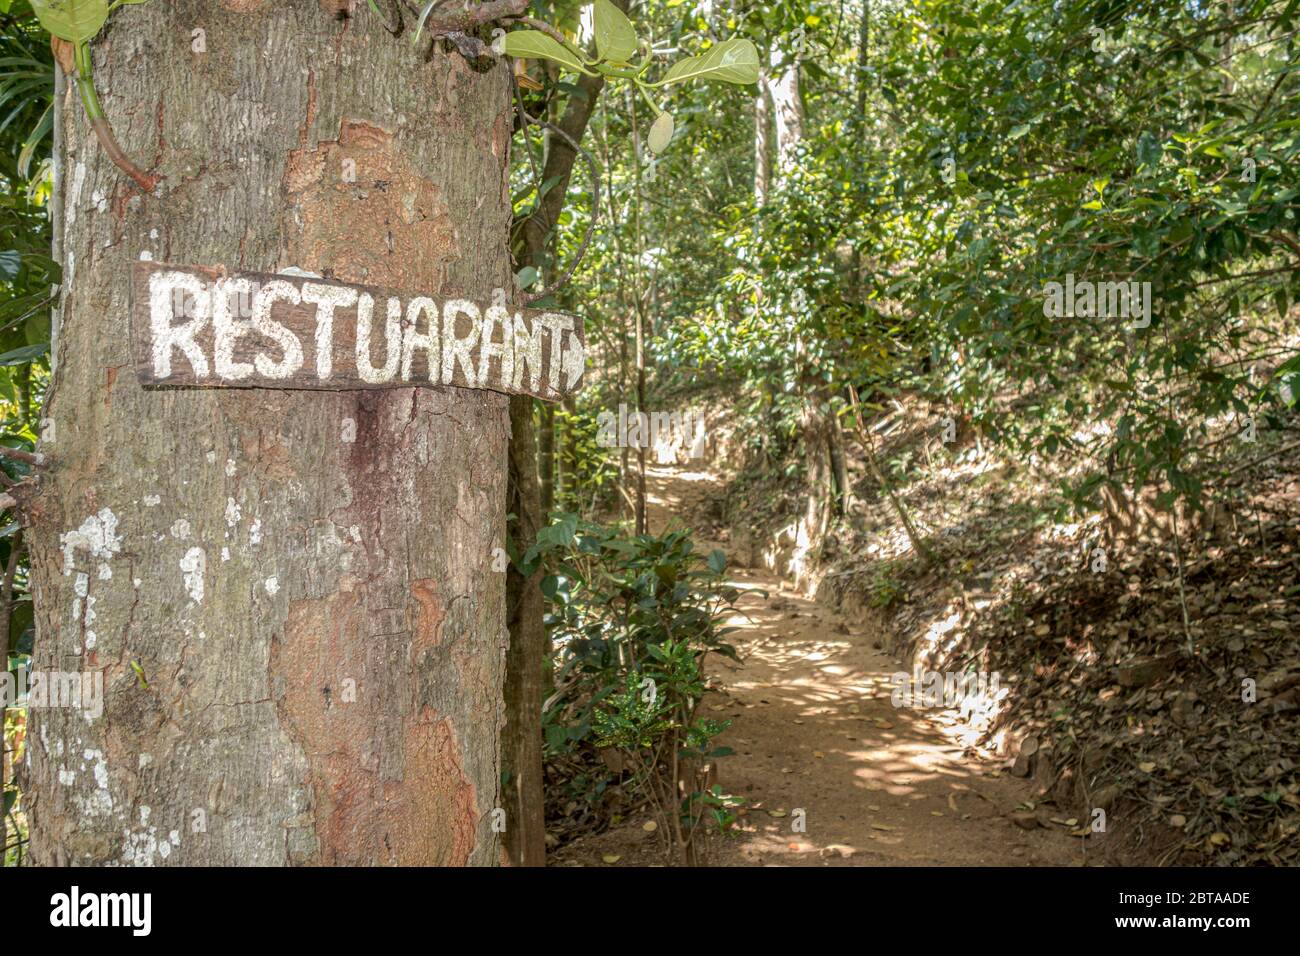 Segno di ristorante della giungla di legno con errore di ortografia inchiodato ad un albero nella foresta dello Sri Lanka che punta ad un percorso. Foto di riserva senza royalty. Foto Stock